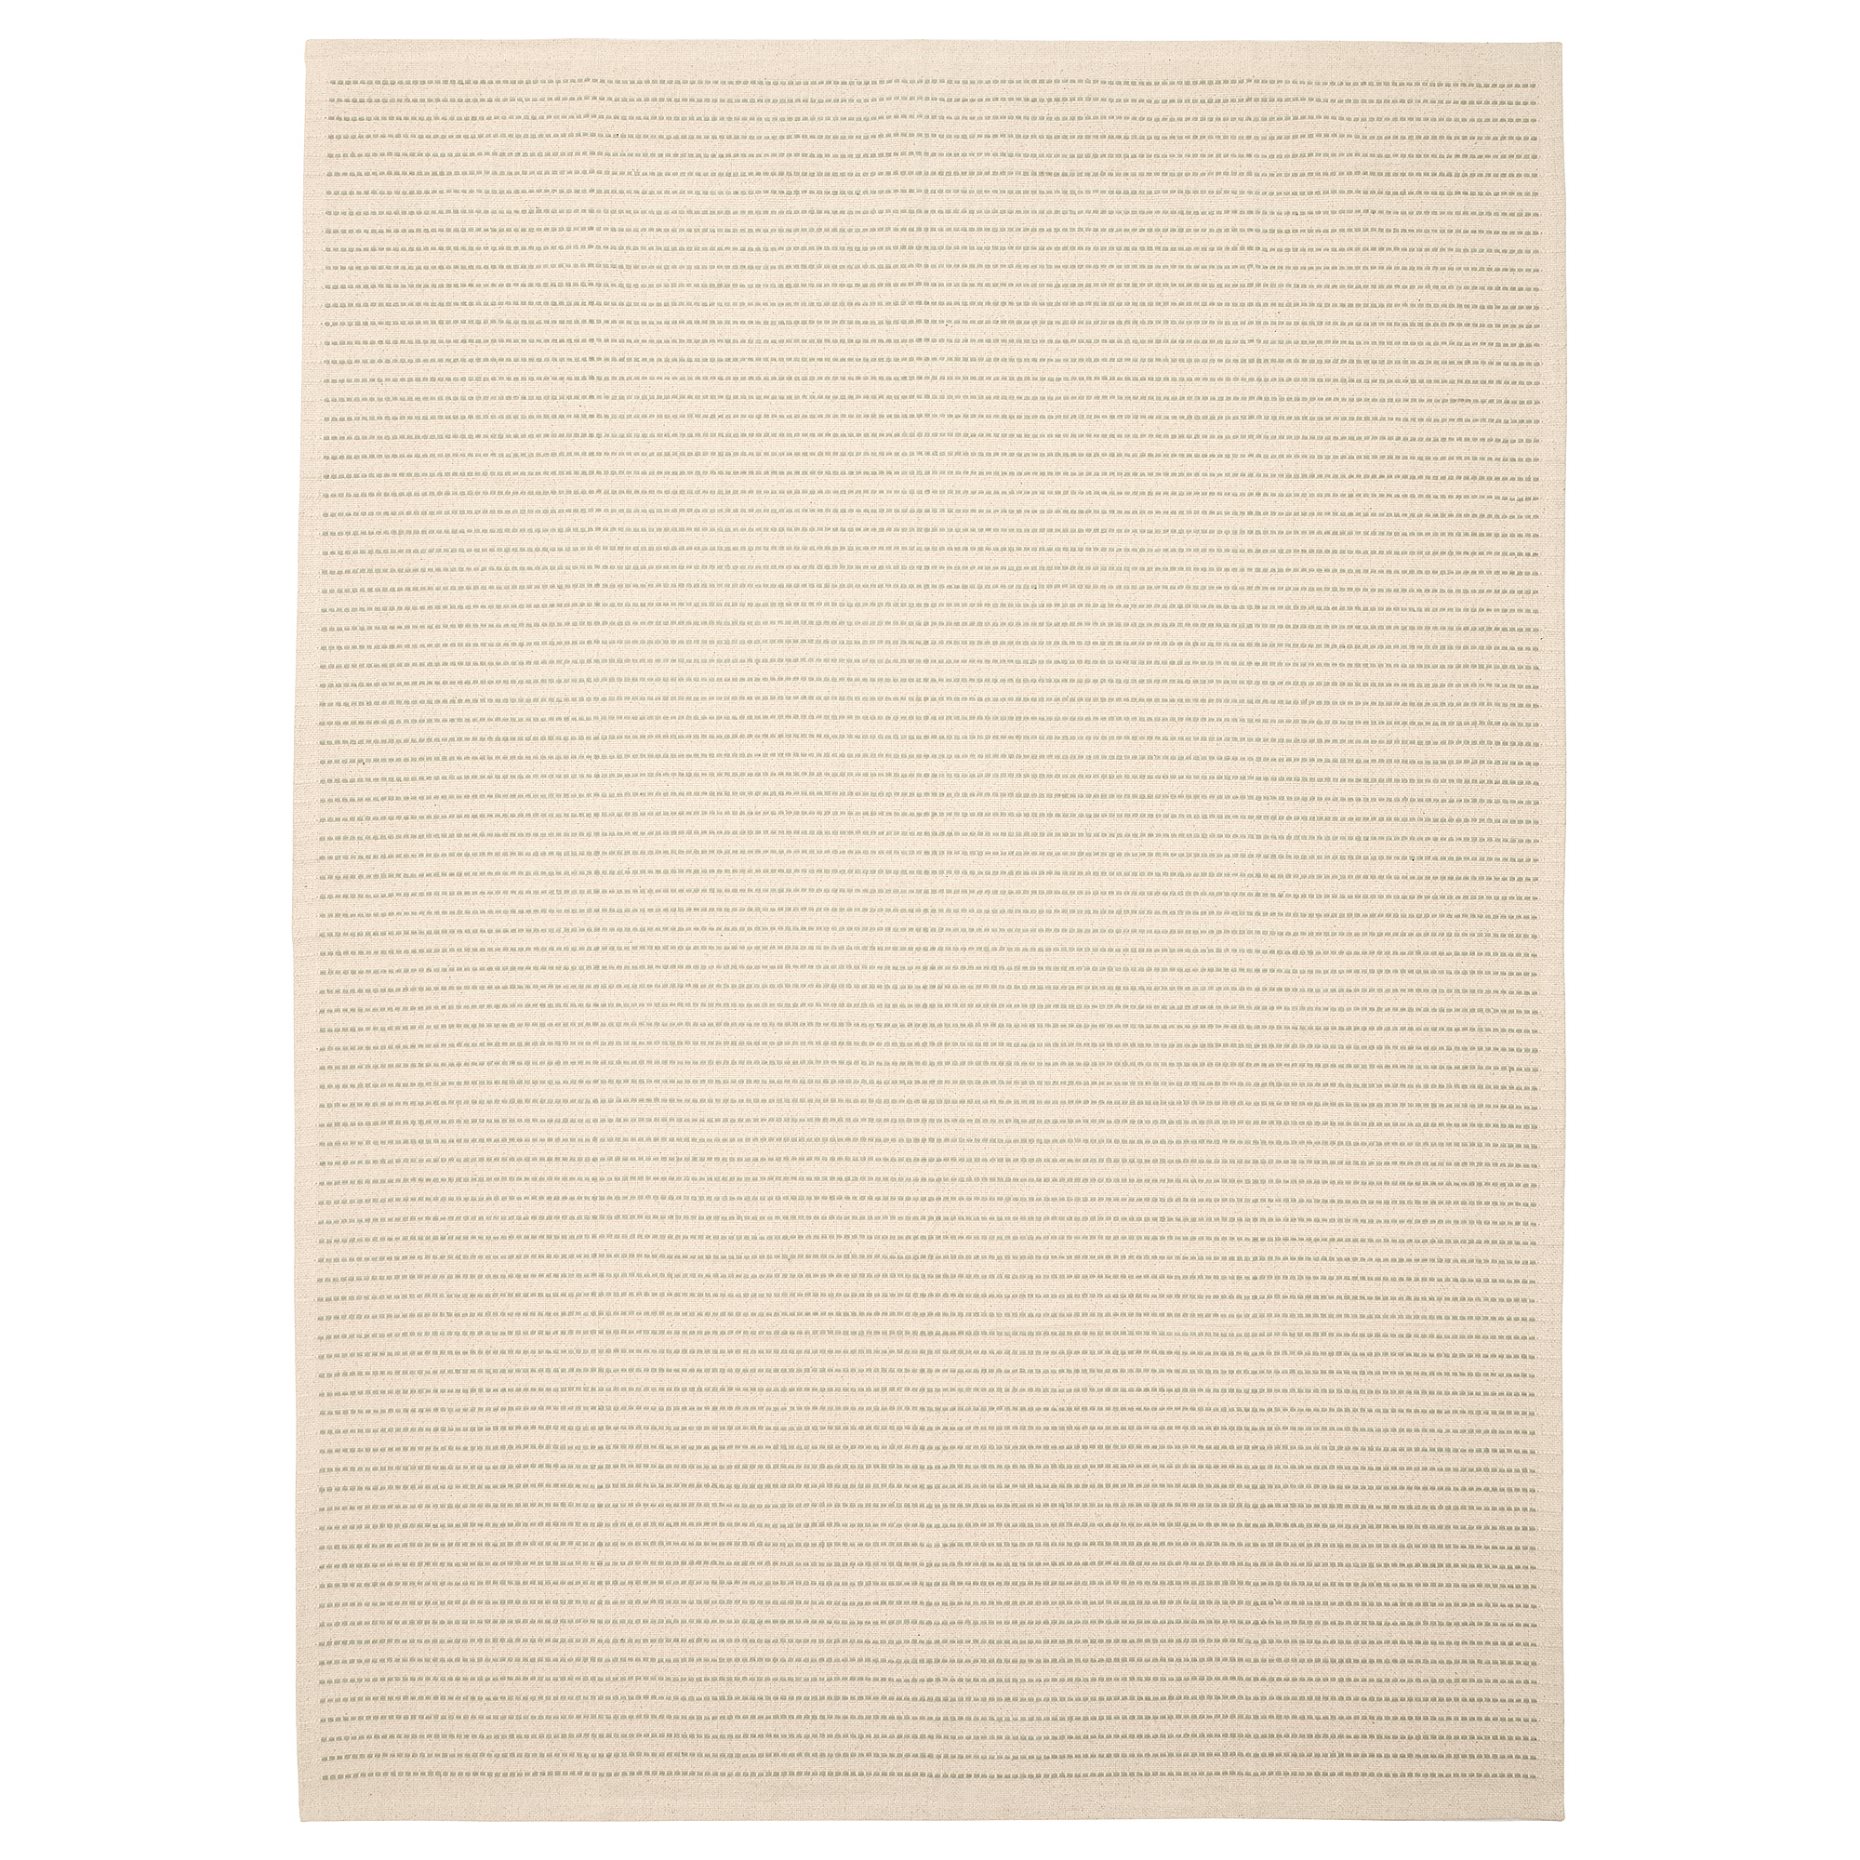 STARREKLINTE, килим, гладко тъкан, 185х280 см, 705.079.15